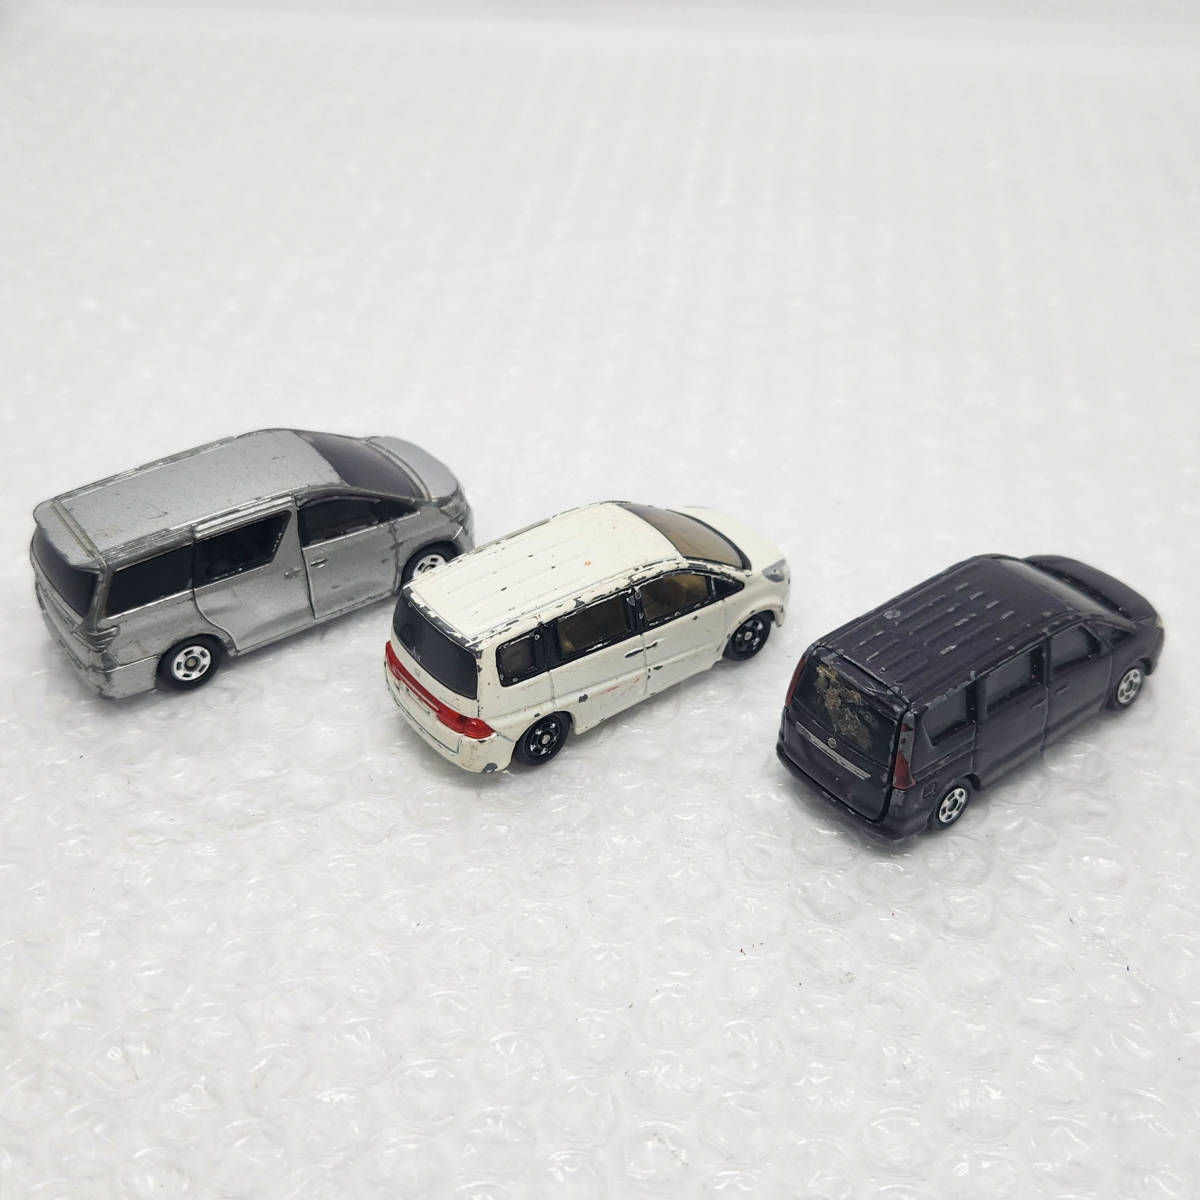 [ST-02065] トミカ ミニバン 3台 セット 日産 セレナ ホンダ ステップワゴン トヨタ ヴェルファイア ミニバン ミニカー 模型 おもちゃ_画像5